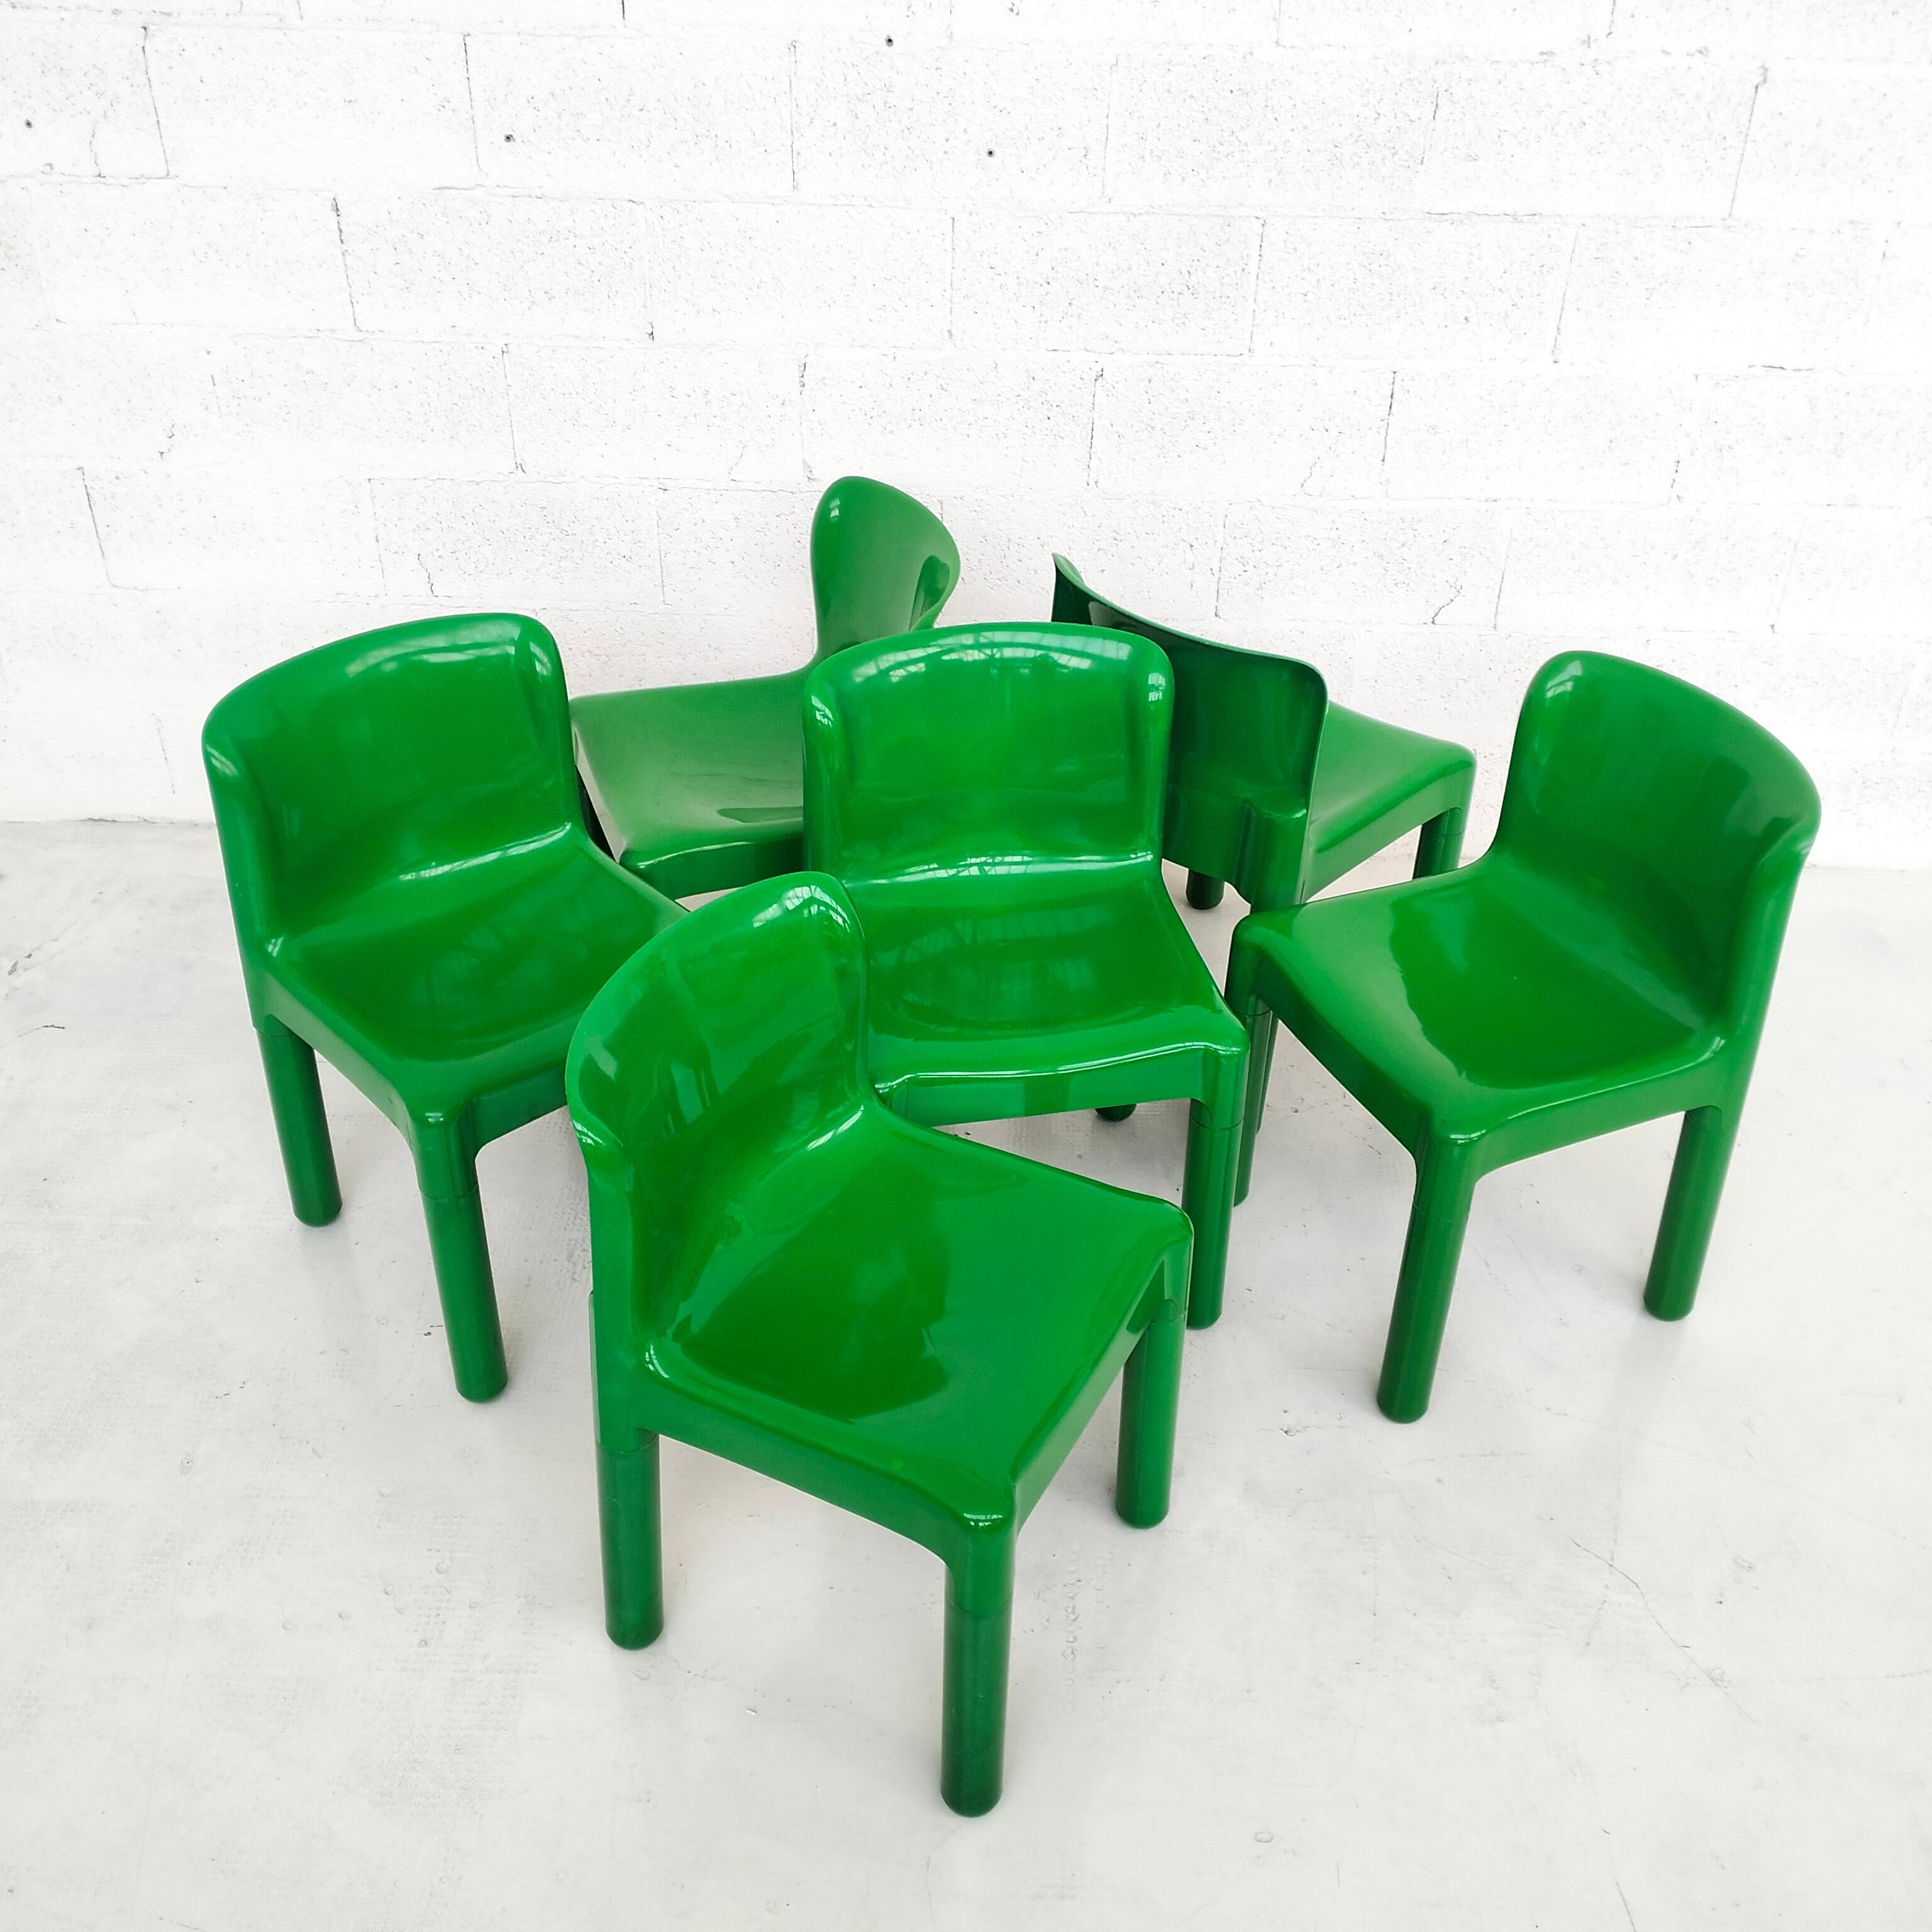 Grüne Kunststoffstühle 4875 von Carlo Bartoli für Kartell 1970er Jahre, 6-teilig (Moderne der Mitte des Jahrhunderts)